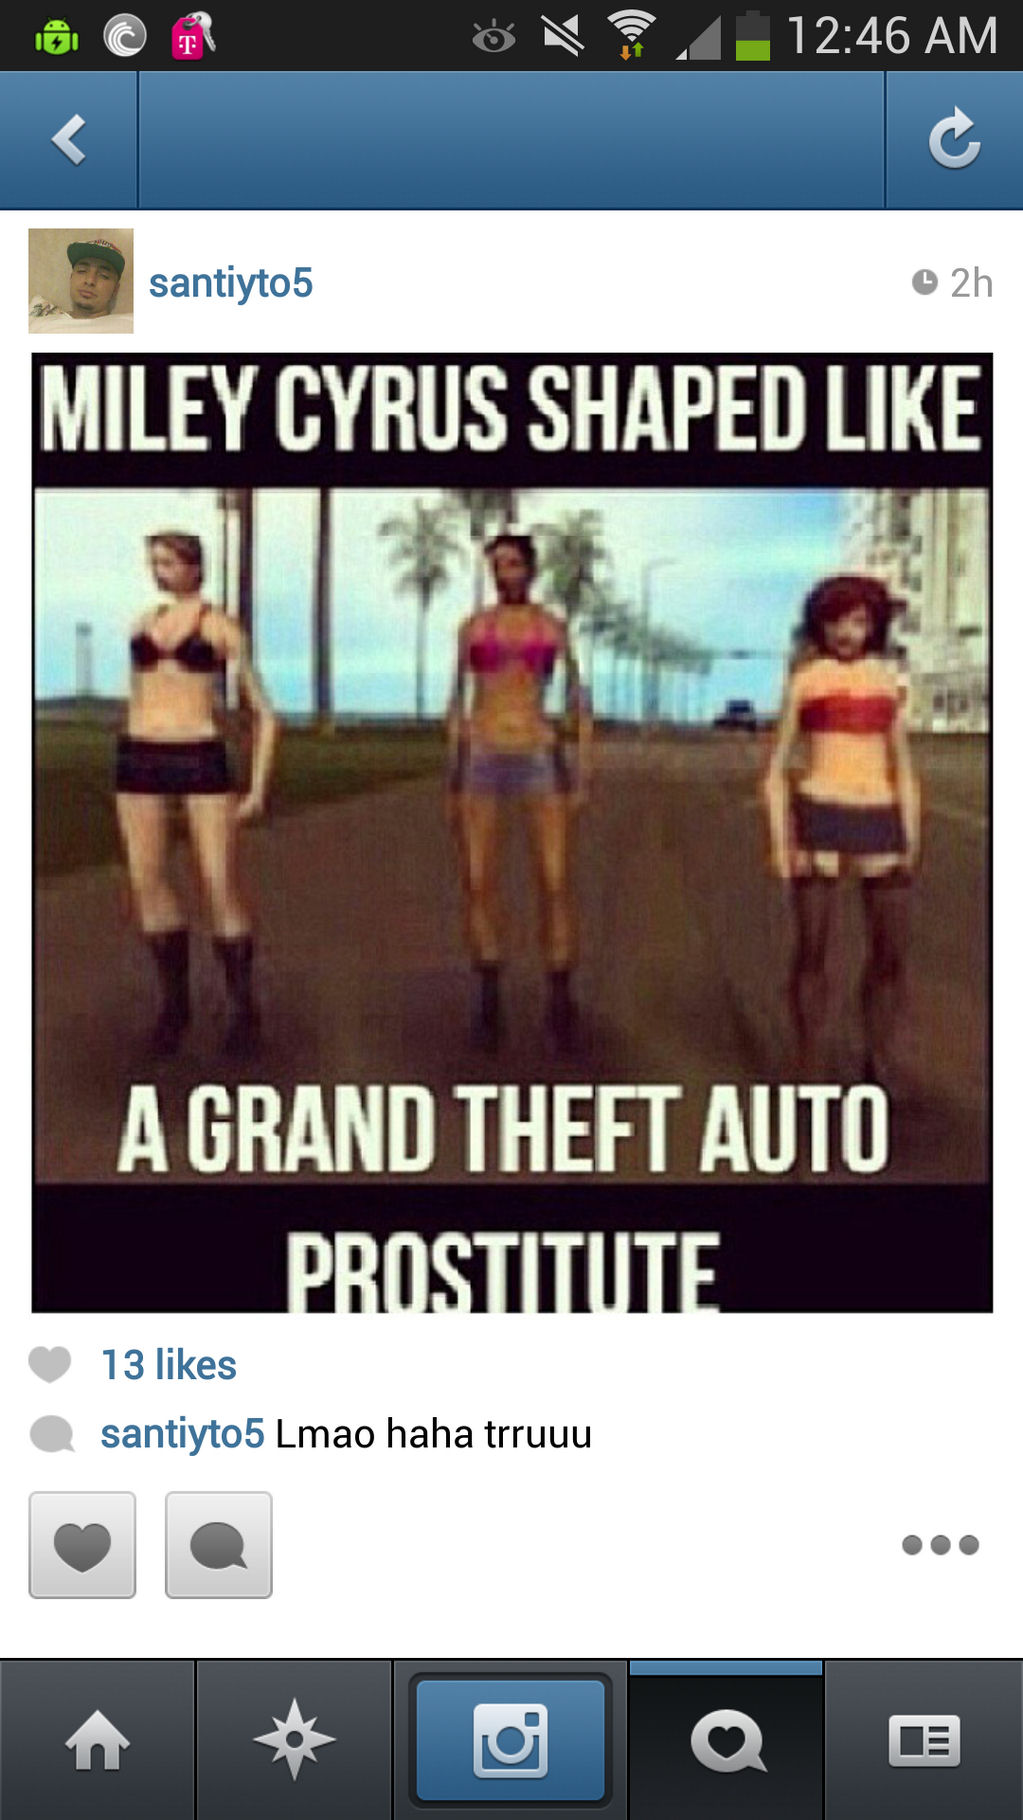 grand theft auto prostitute